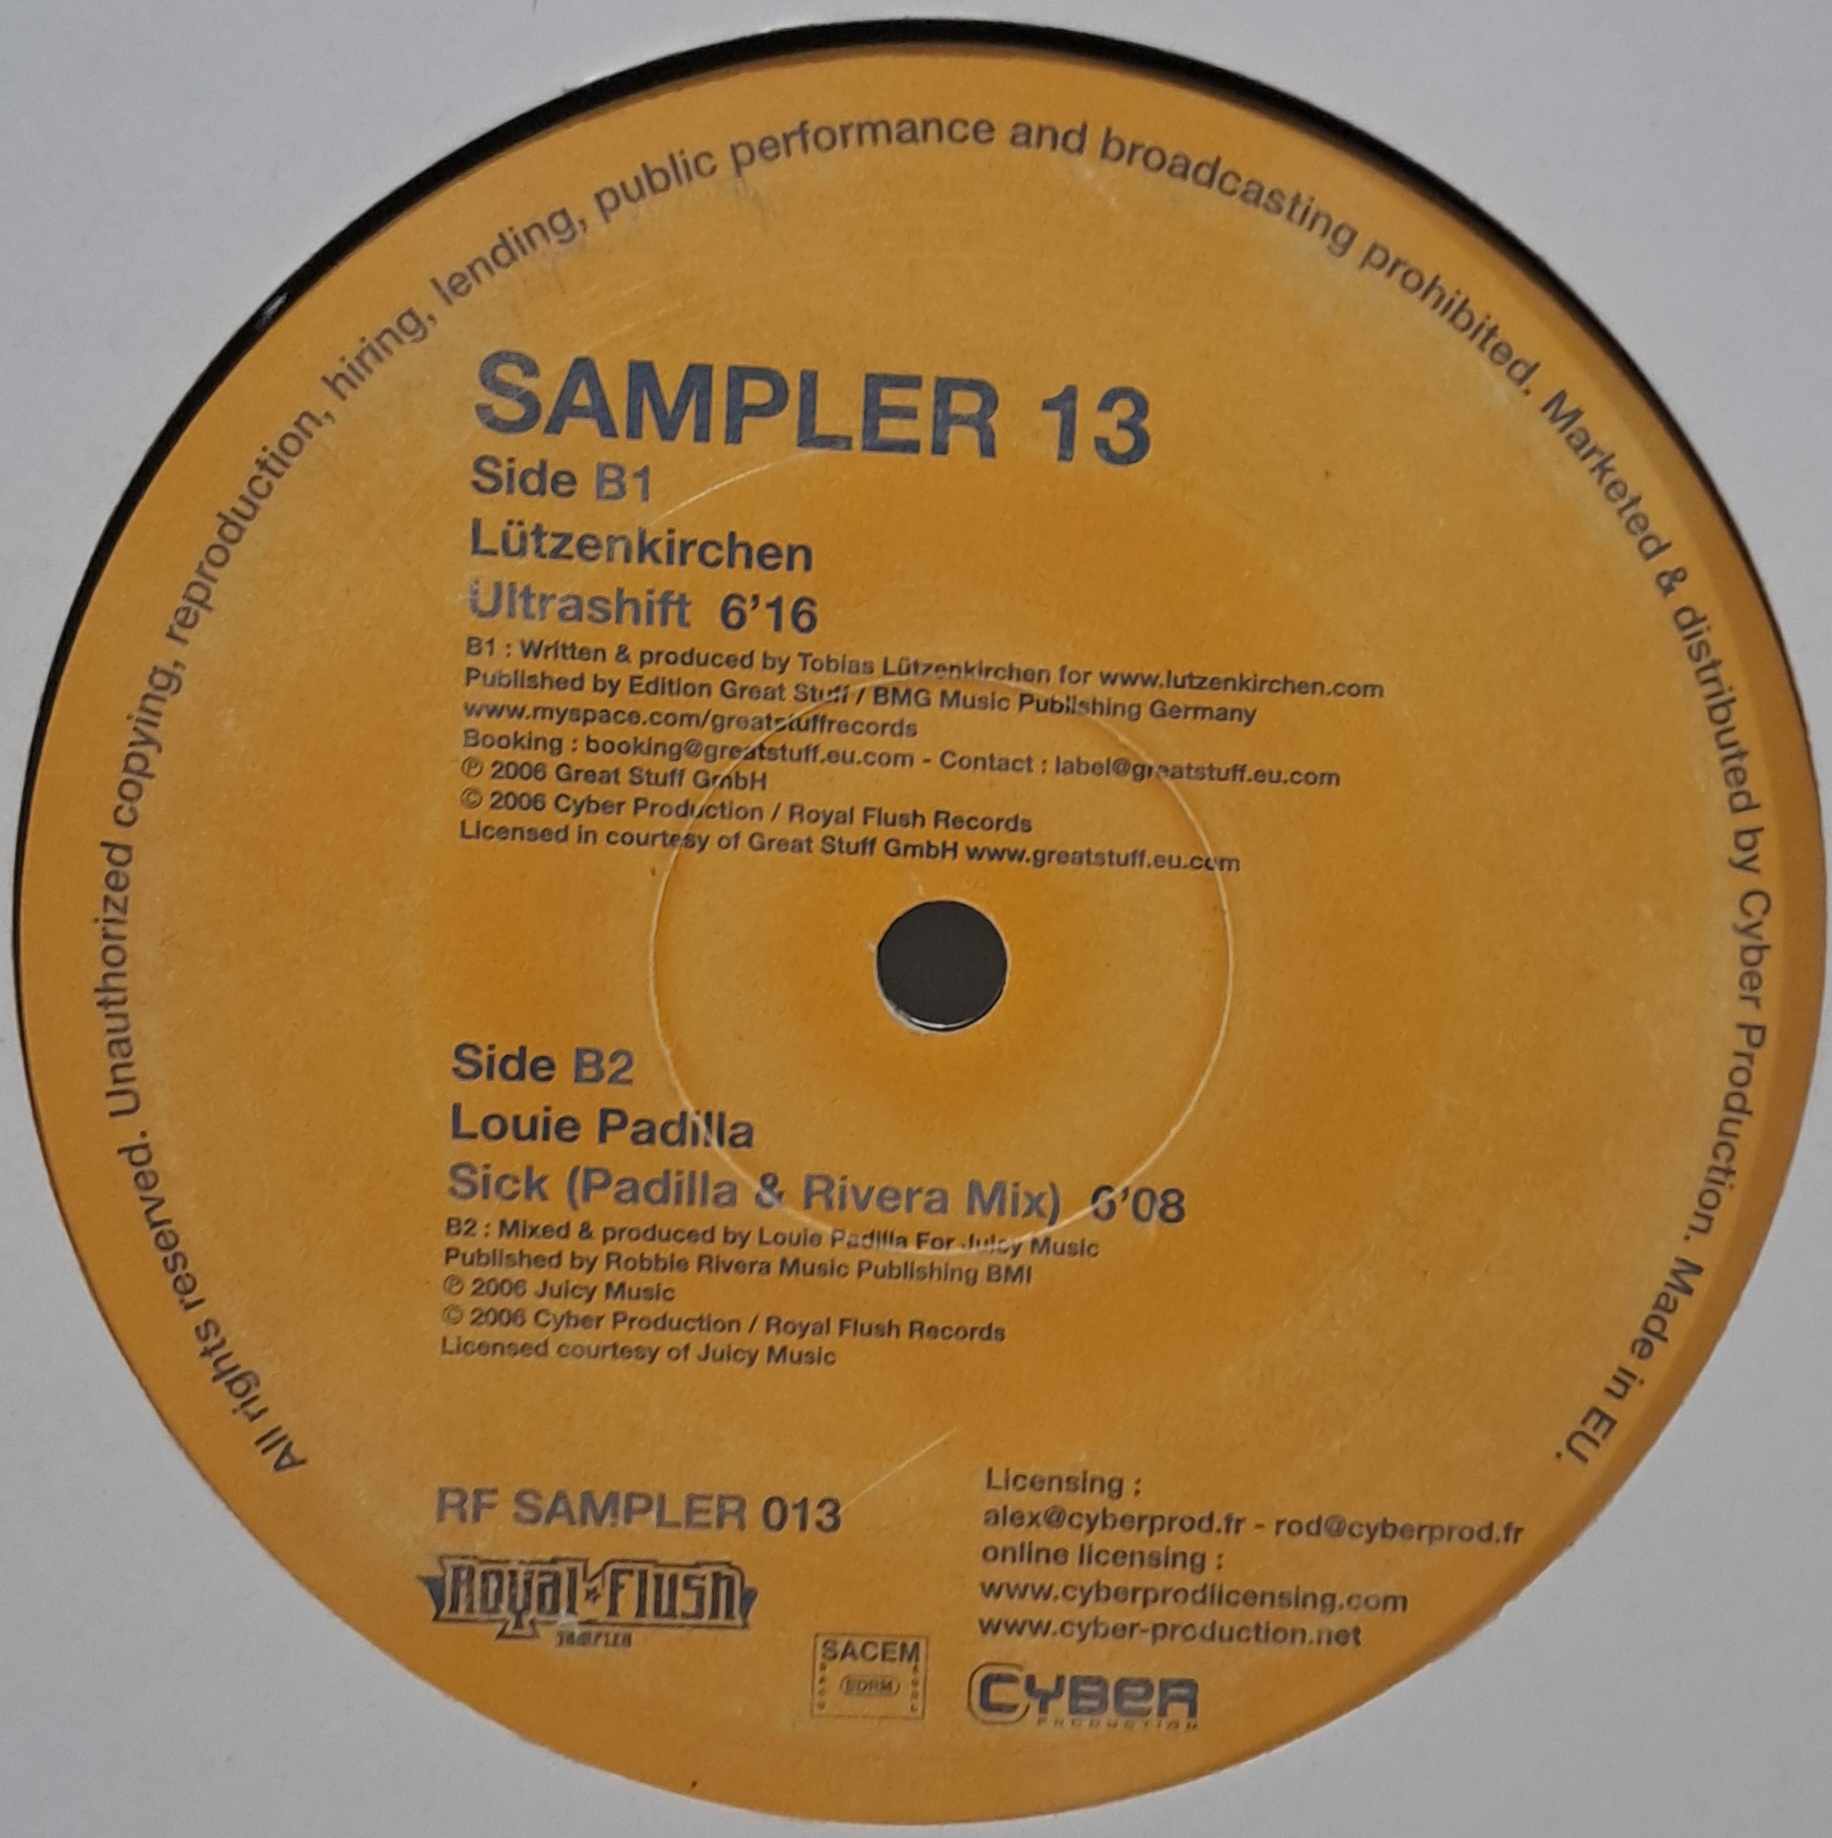 RF Sampler 013 - vinyle House